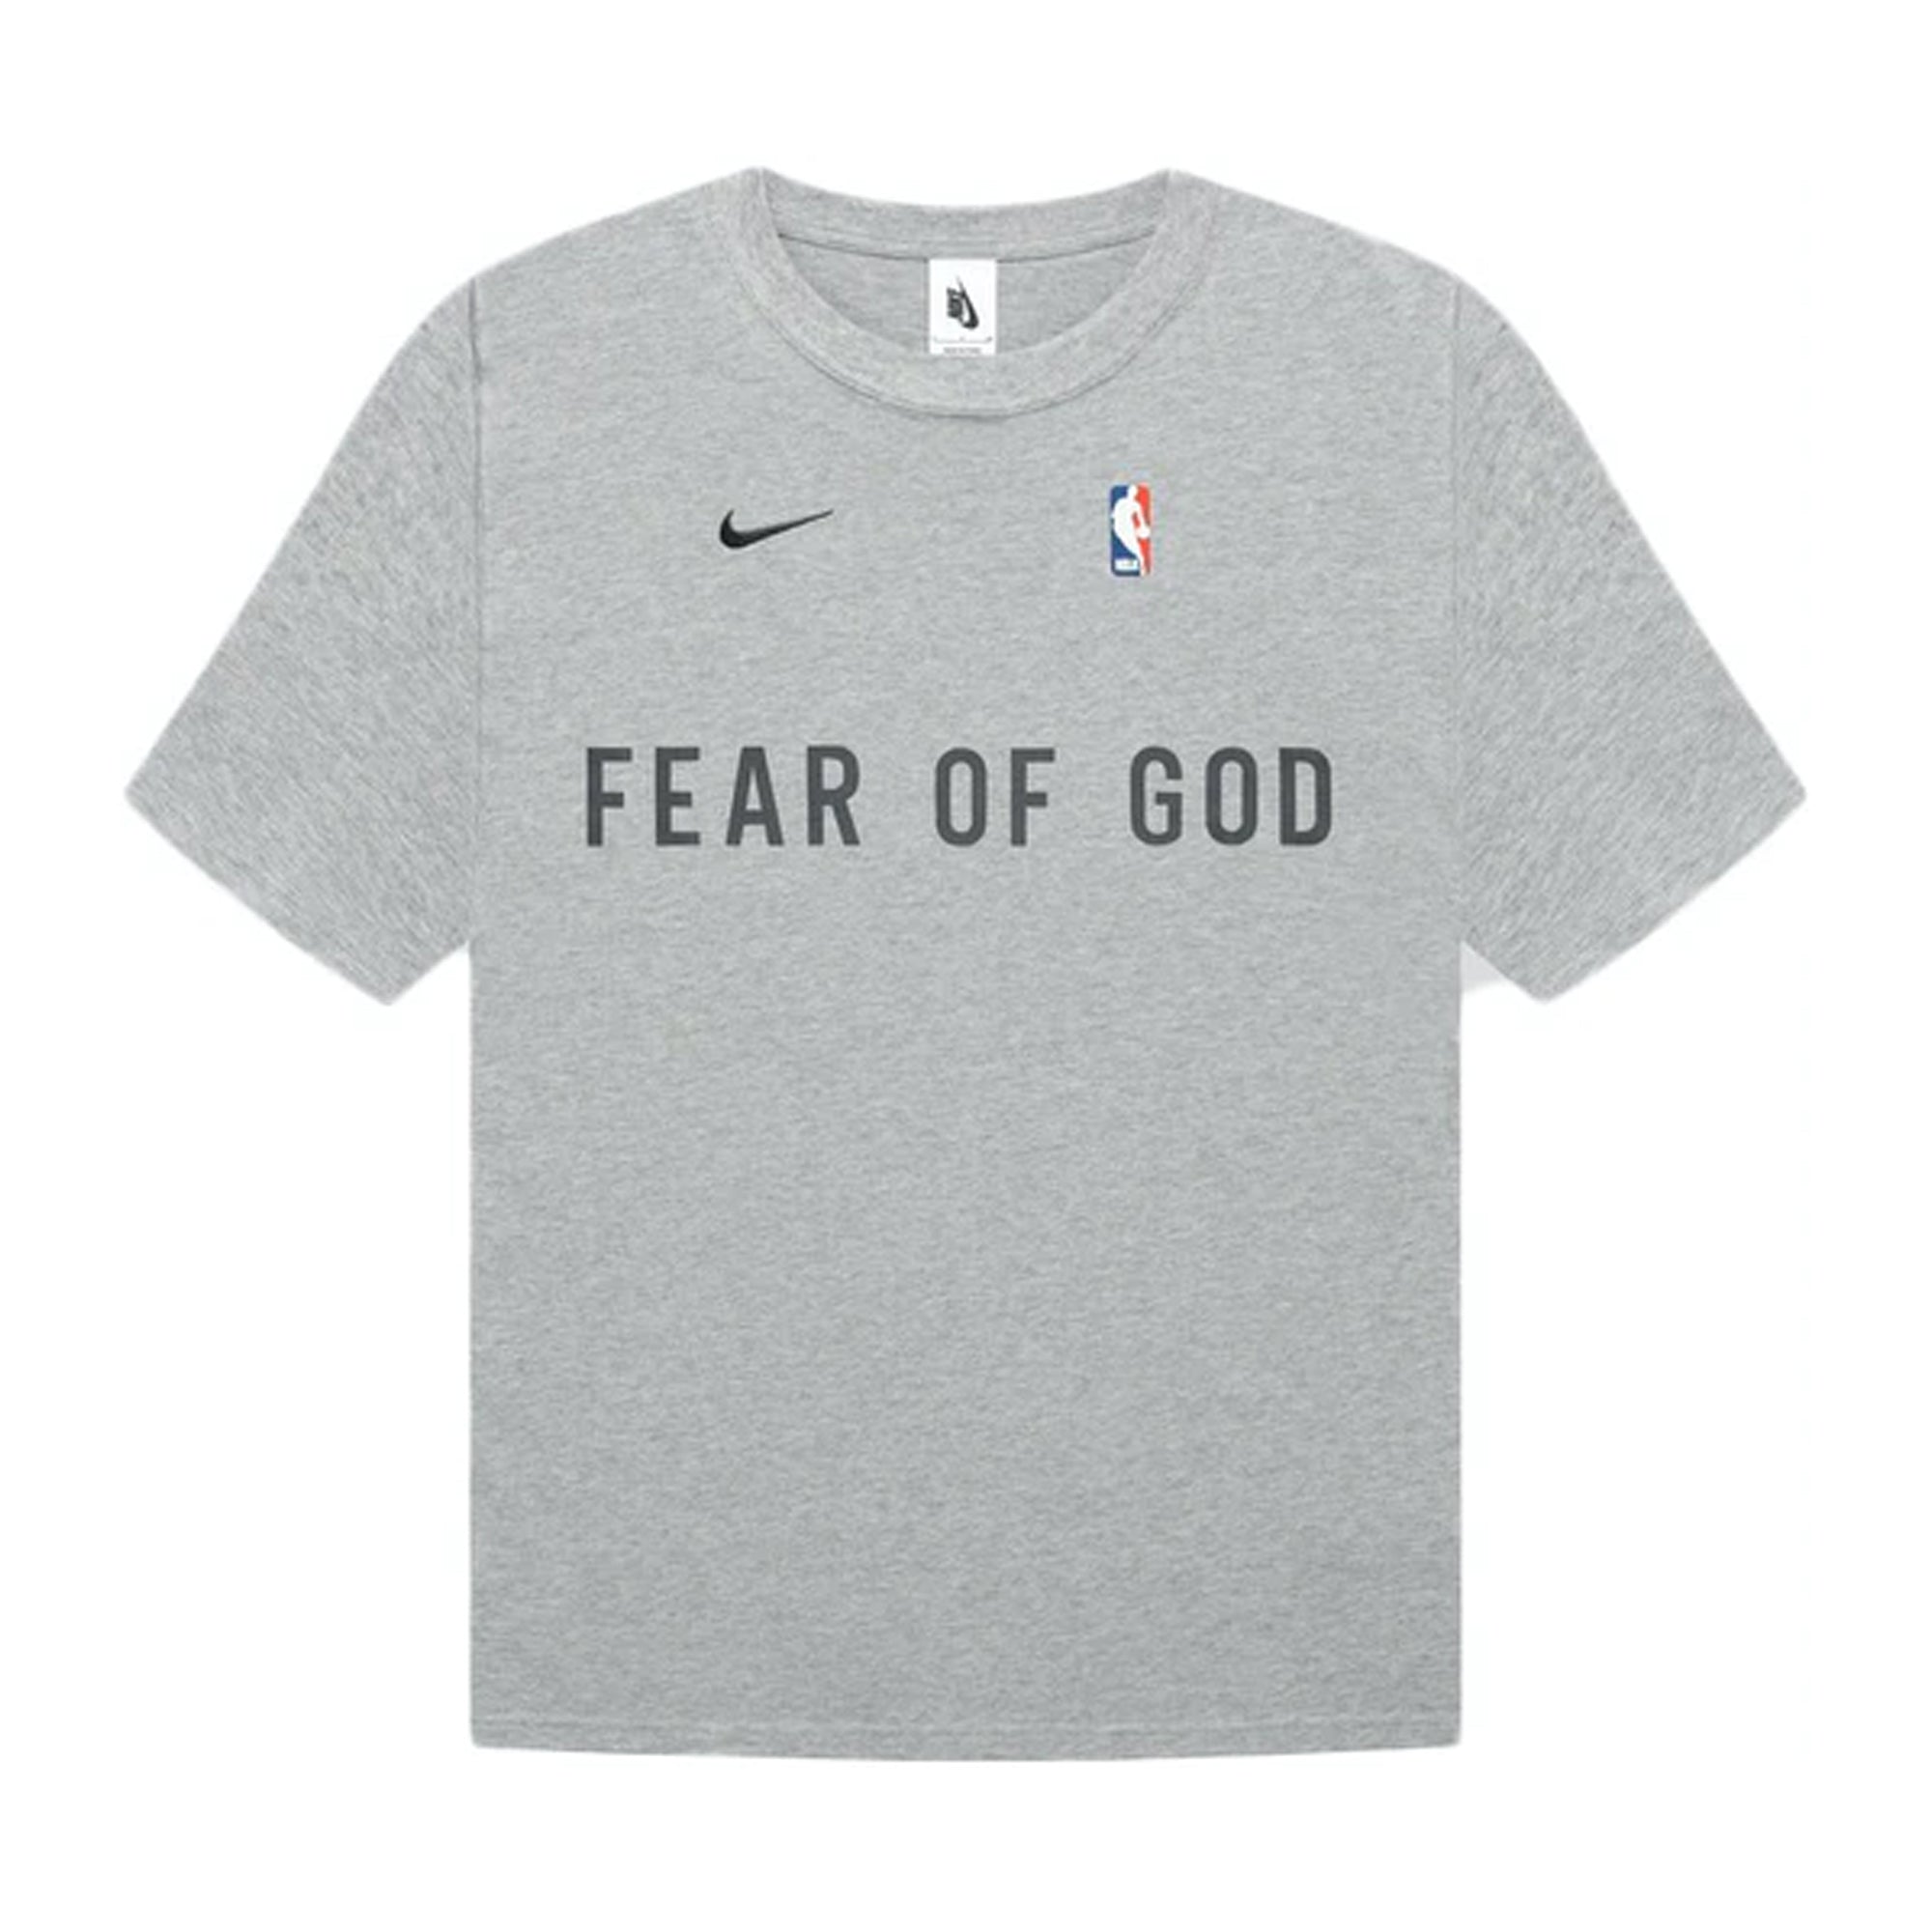 FEAR OF GOD x Nike Warm Up T-Shirt Dark Heather Grey-PLUS